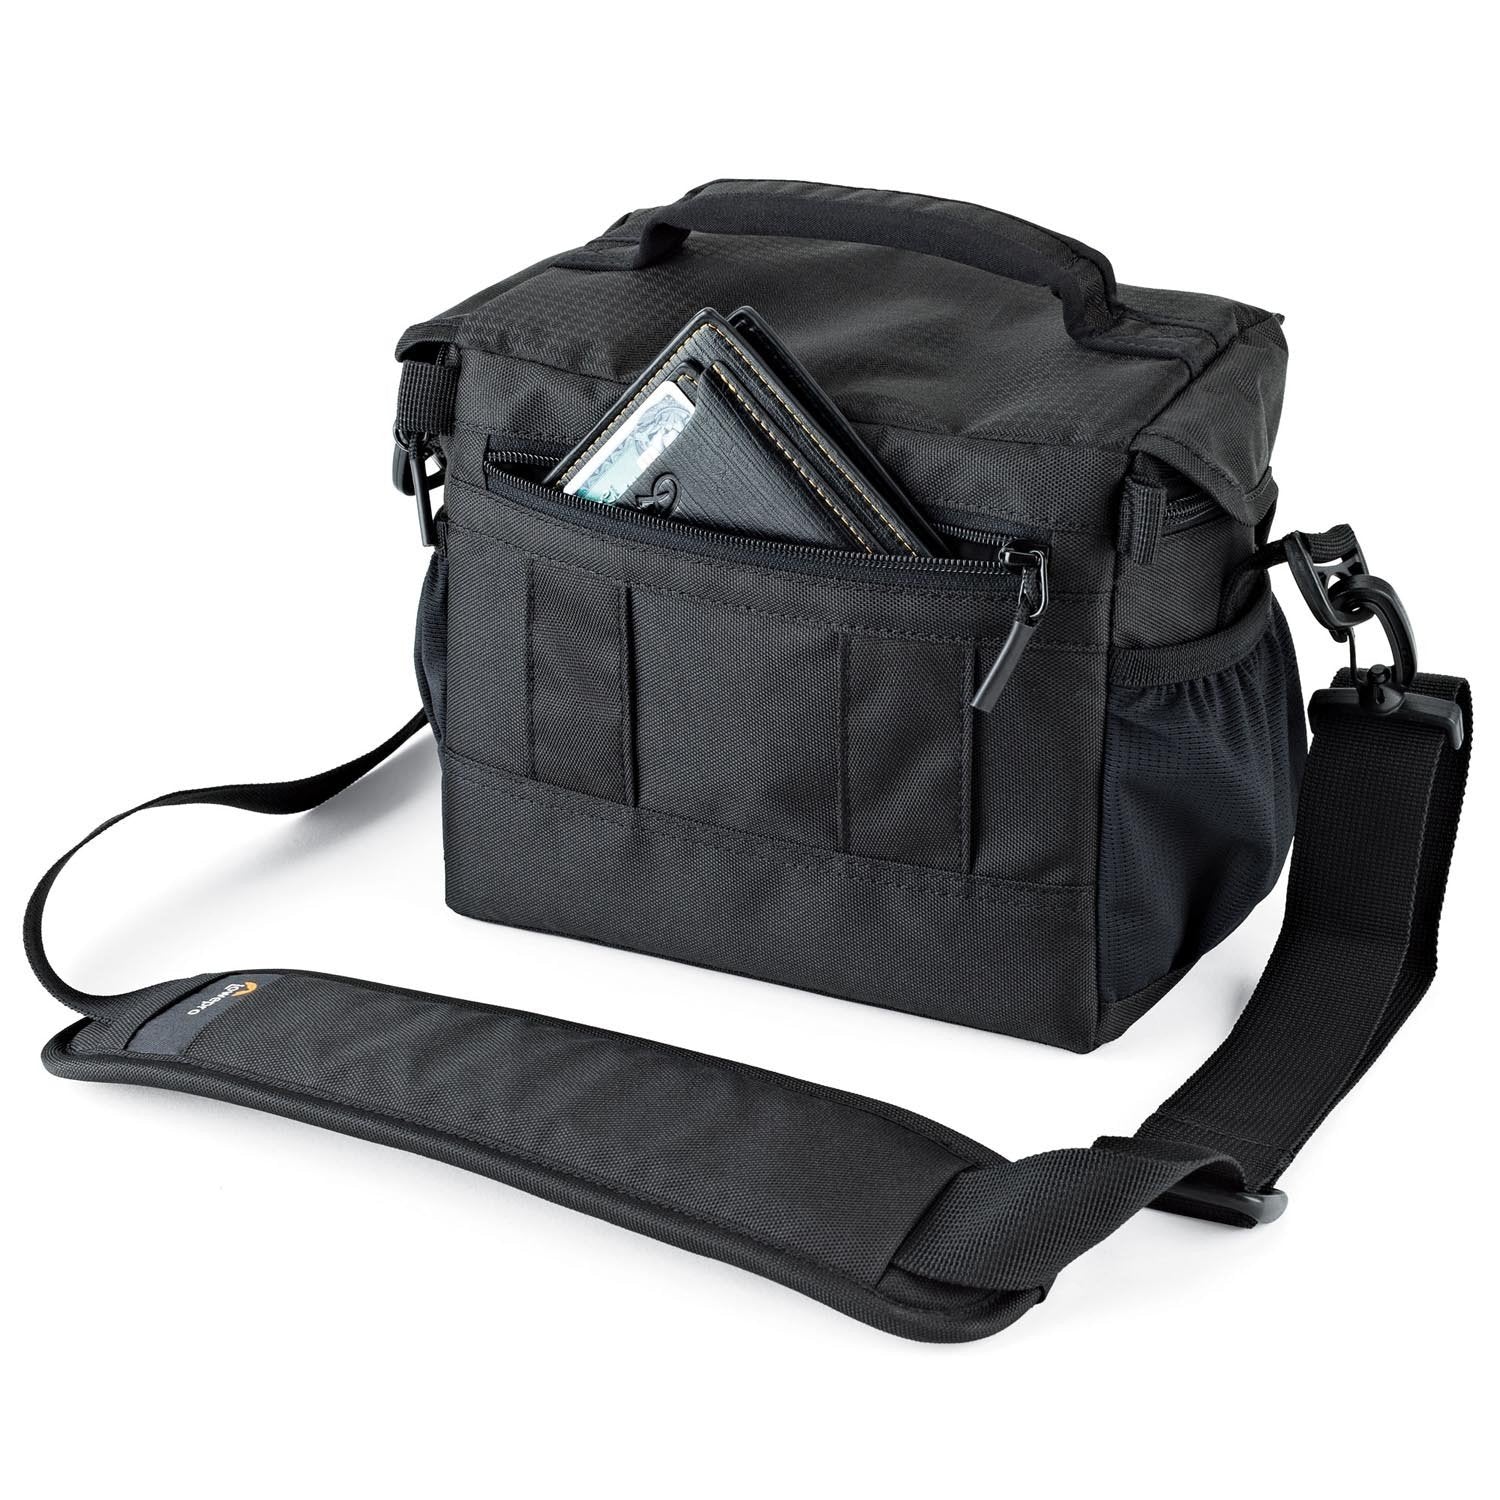 Lowepro Nova 160 AW II Shoulder Bag Black Lowepro Bag - Shoulder